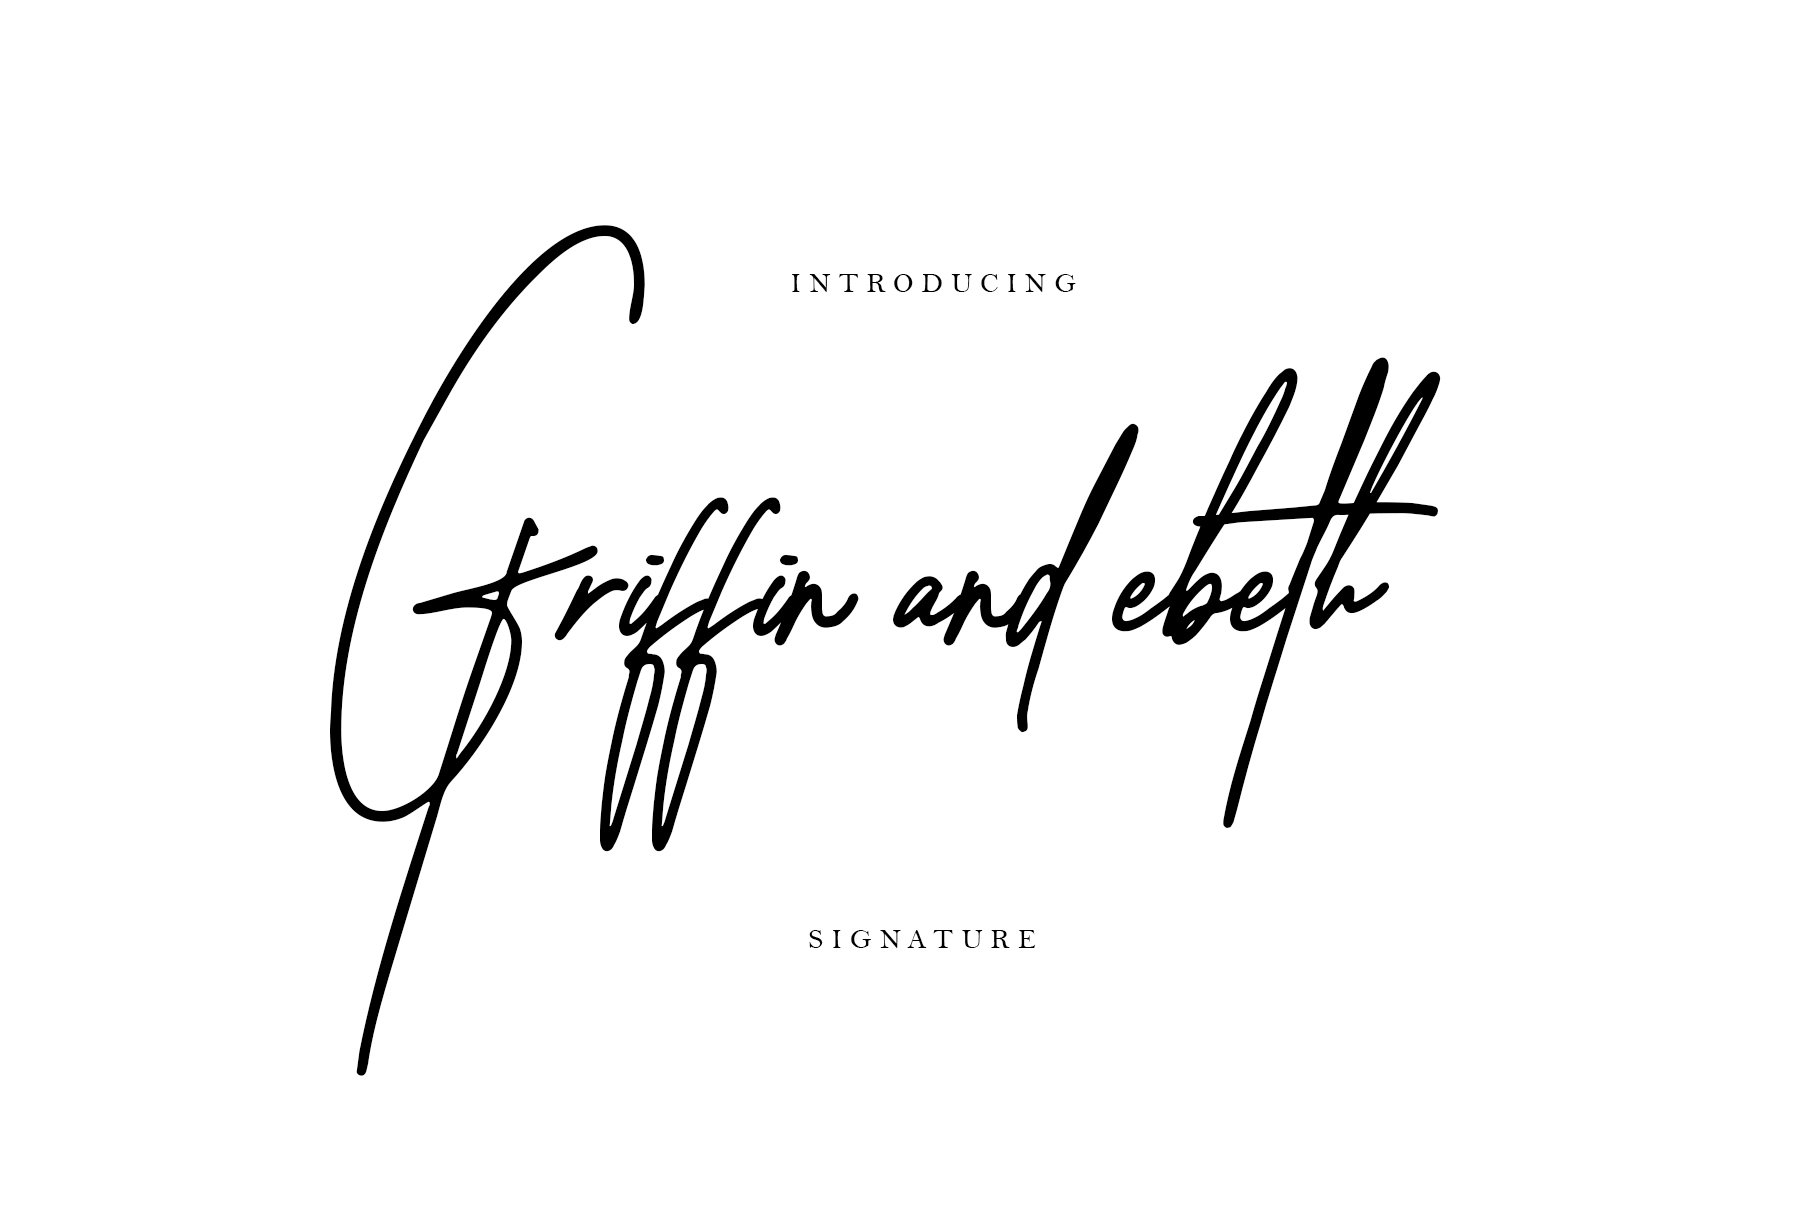 时尚的签名英文字体 Griffin and ebeth